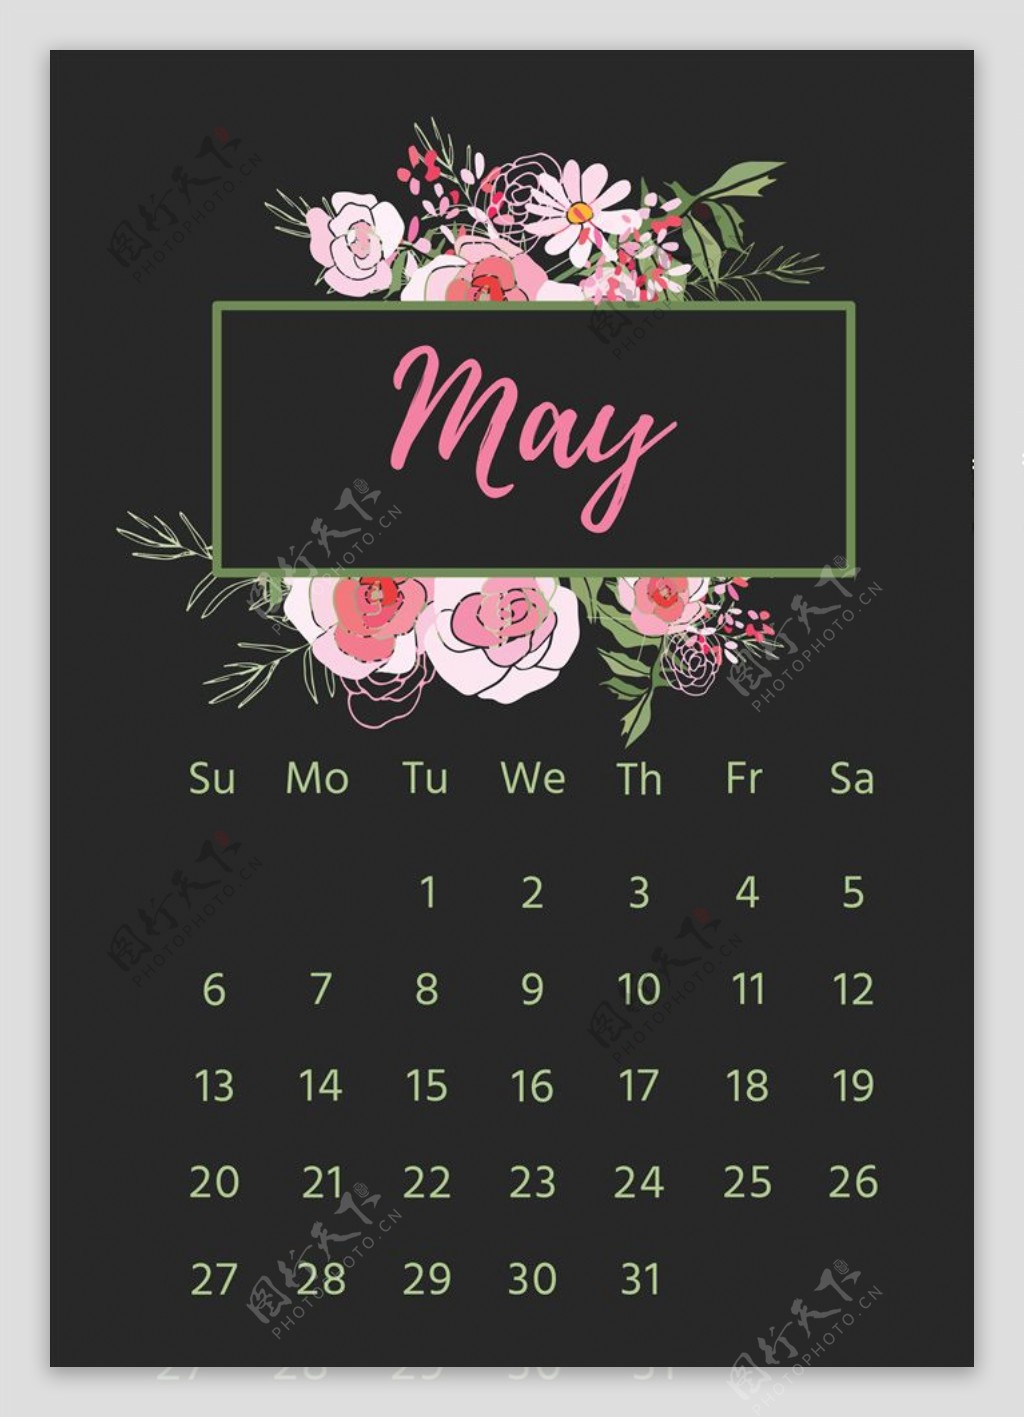 花卉2018月历